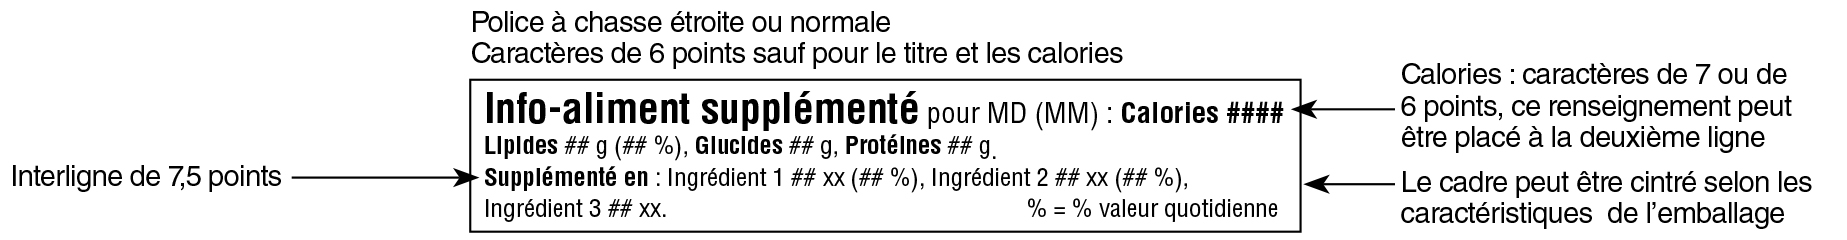 Modèle linéaire simplifié français du tableau des renseignements sur les aliments supplémentés avec indications. Version texte ci-dessous.